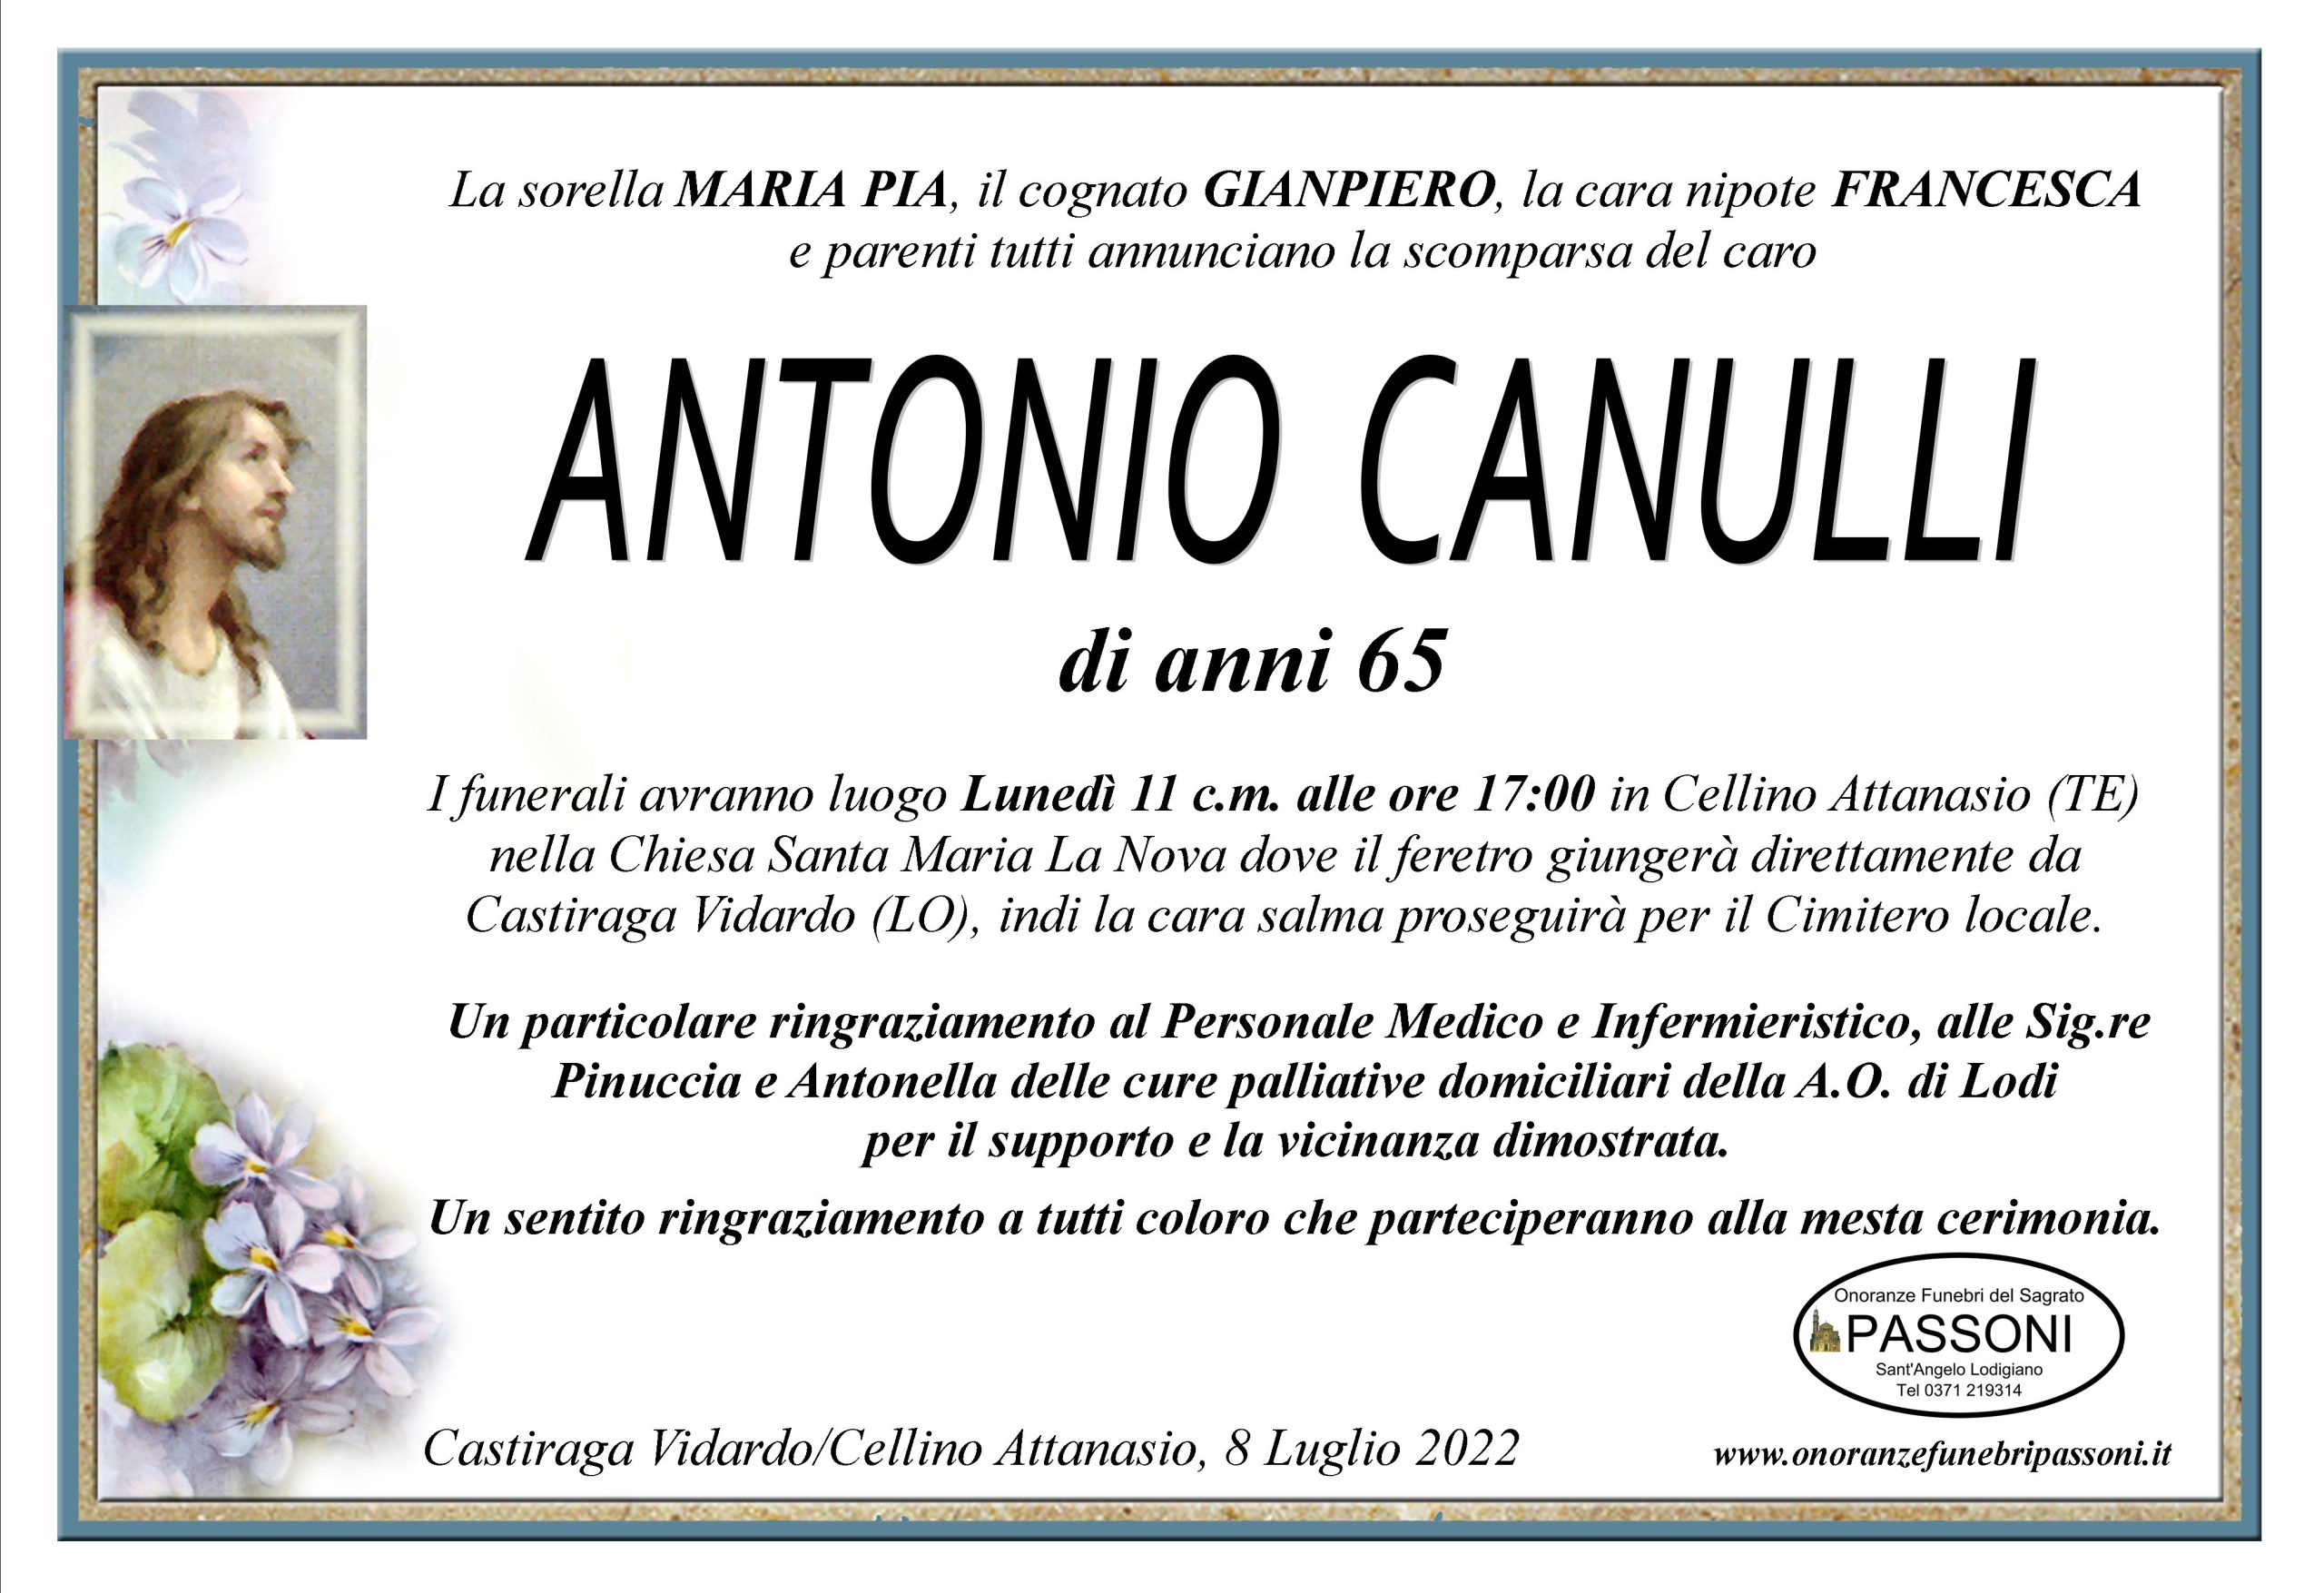 ANTONIO CANULLI